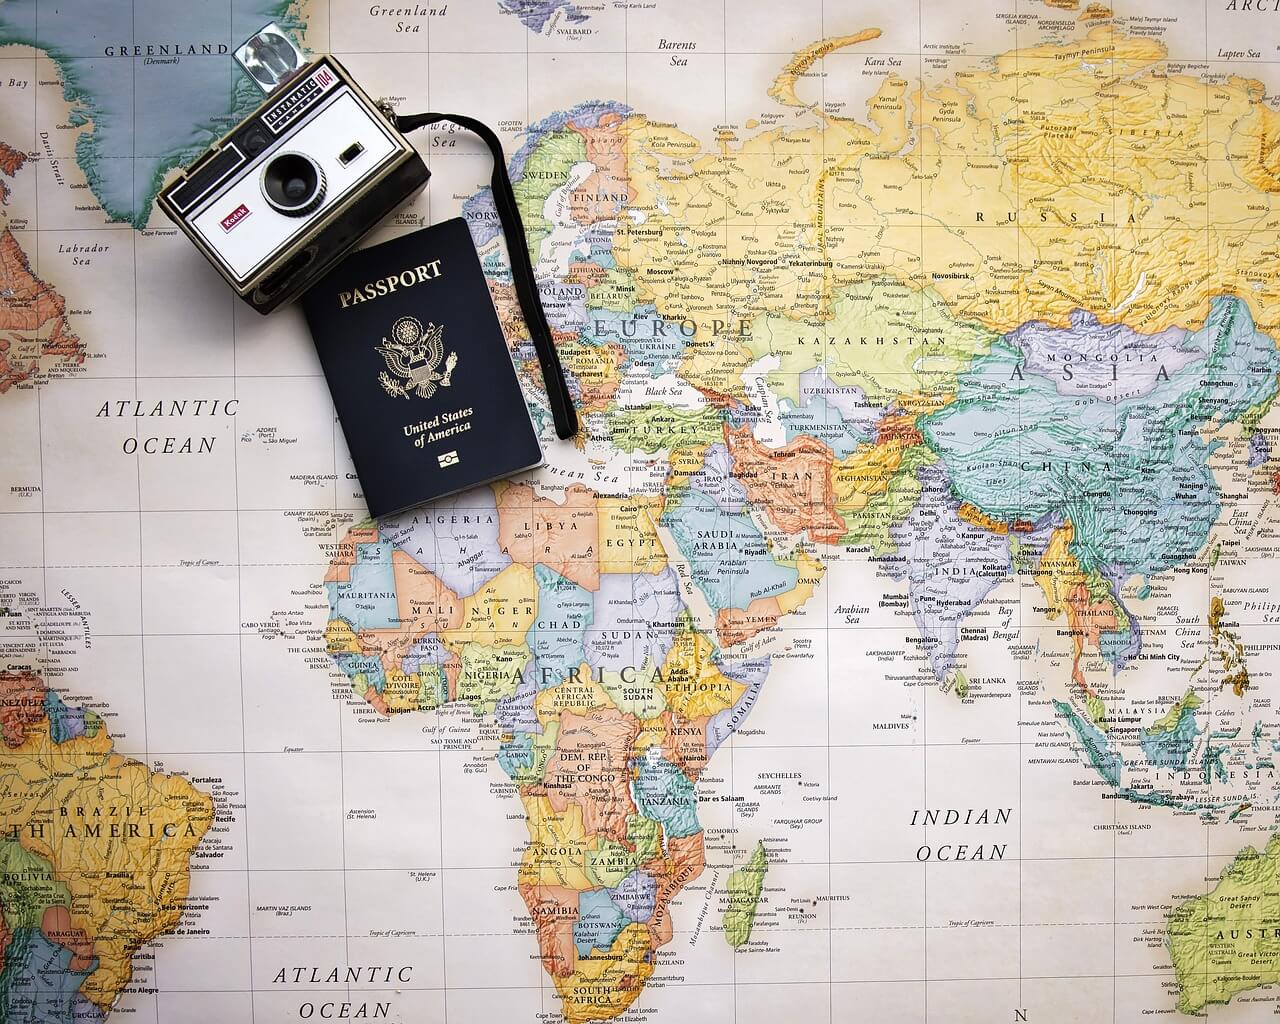 world traveler us passport camera